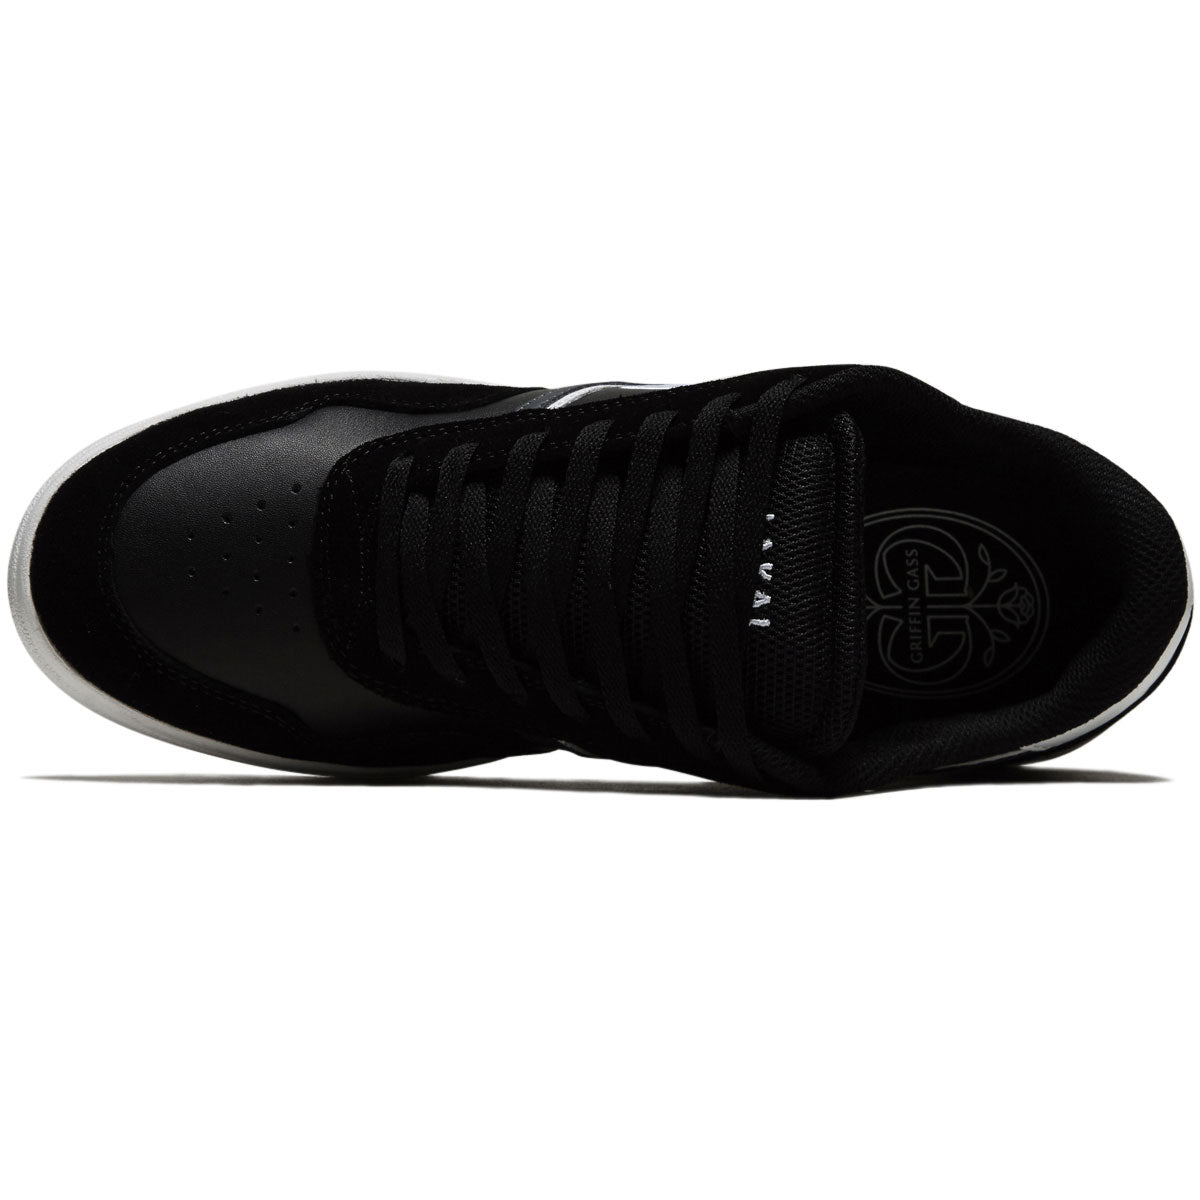 Lakai Terrace Shoes - Black Suede image 3